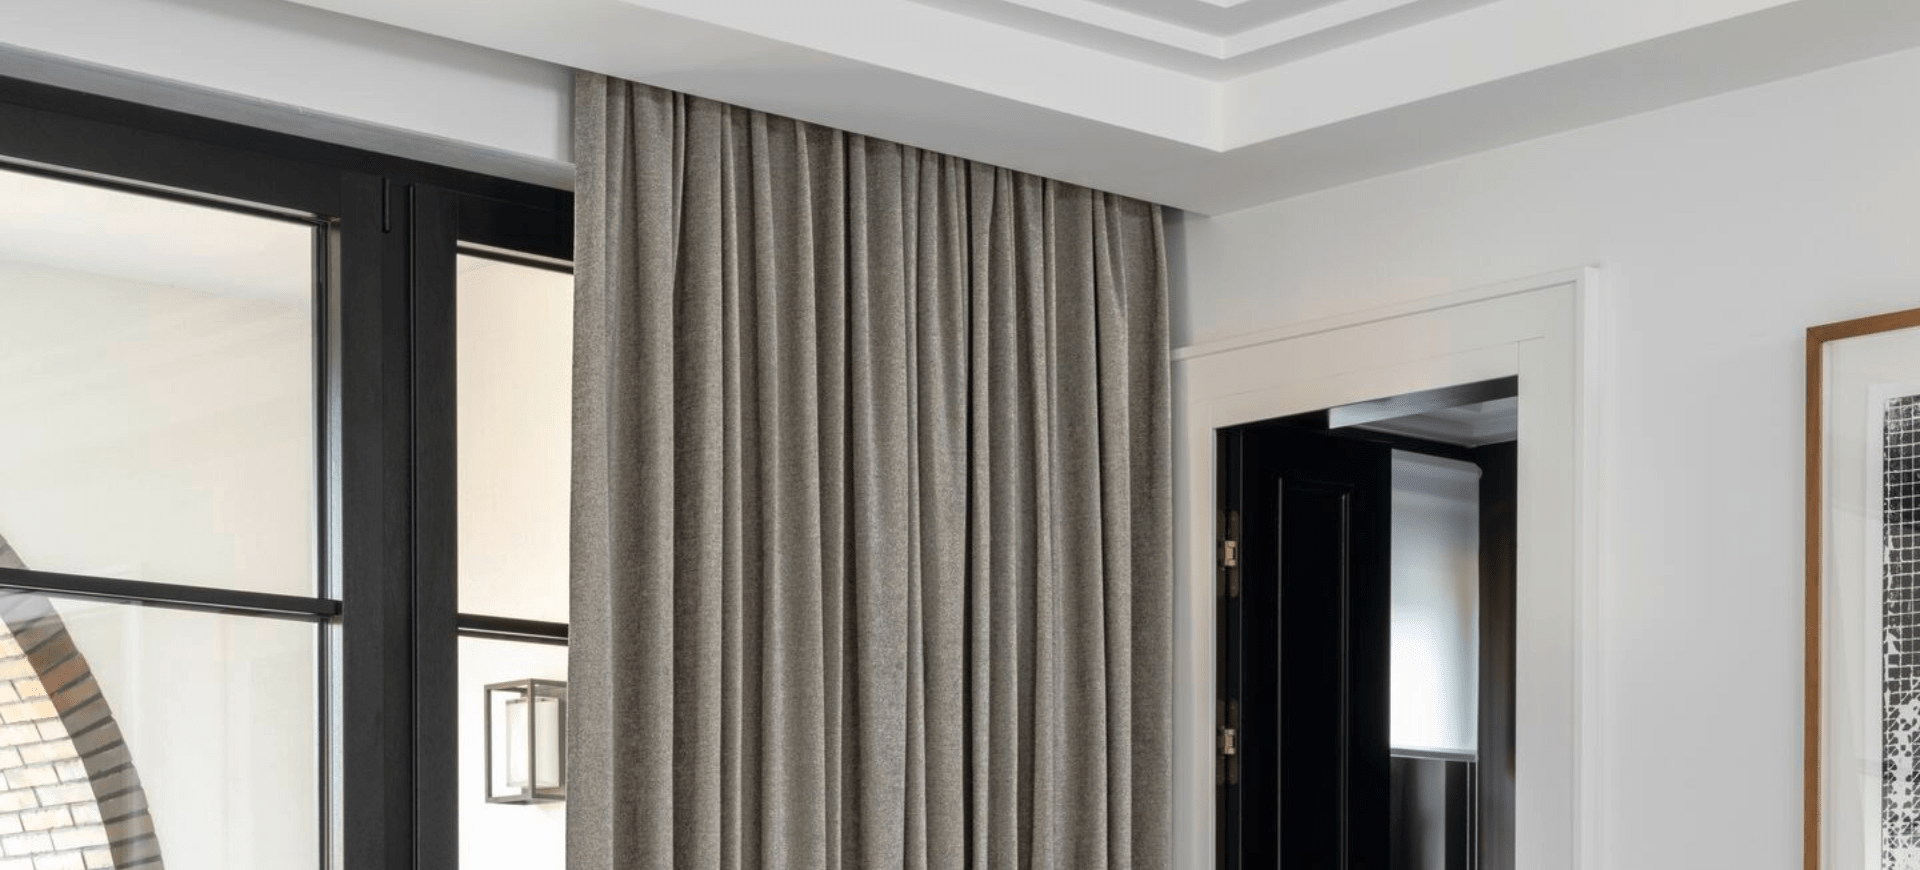 Beitragsbild für Dimout Stoffe. Hier ein grauer blickdichter Vorhang in einem modern eingerichteten Raum